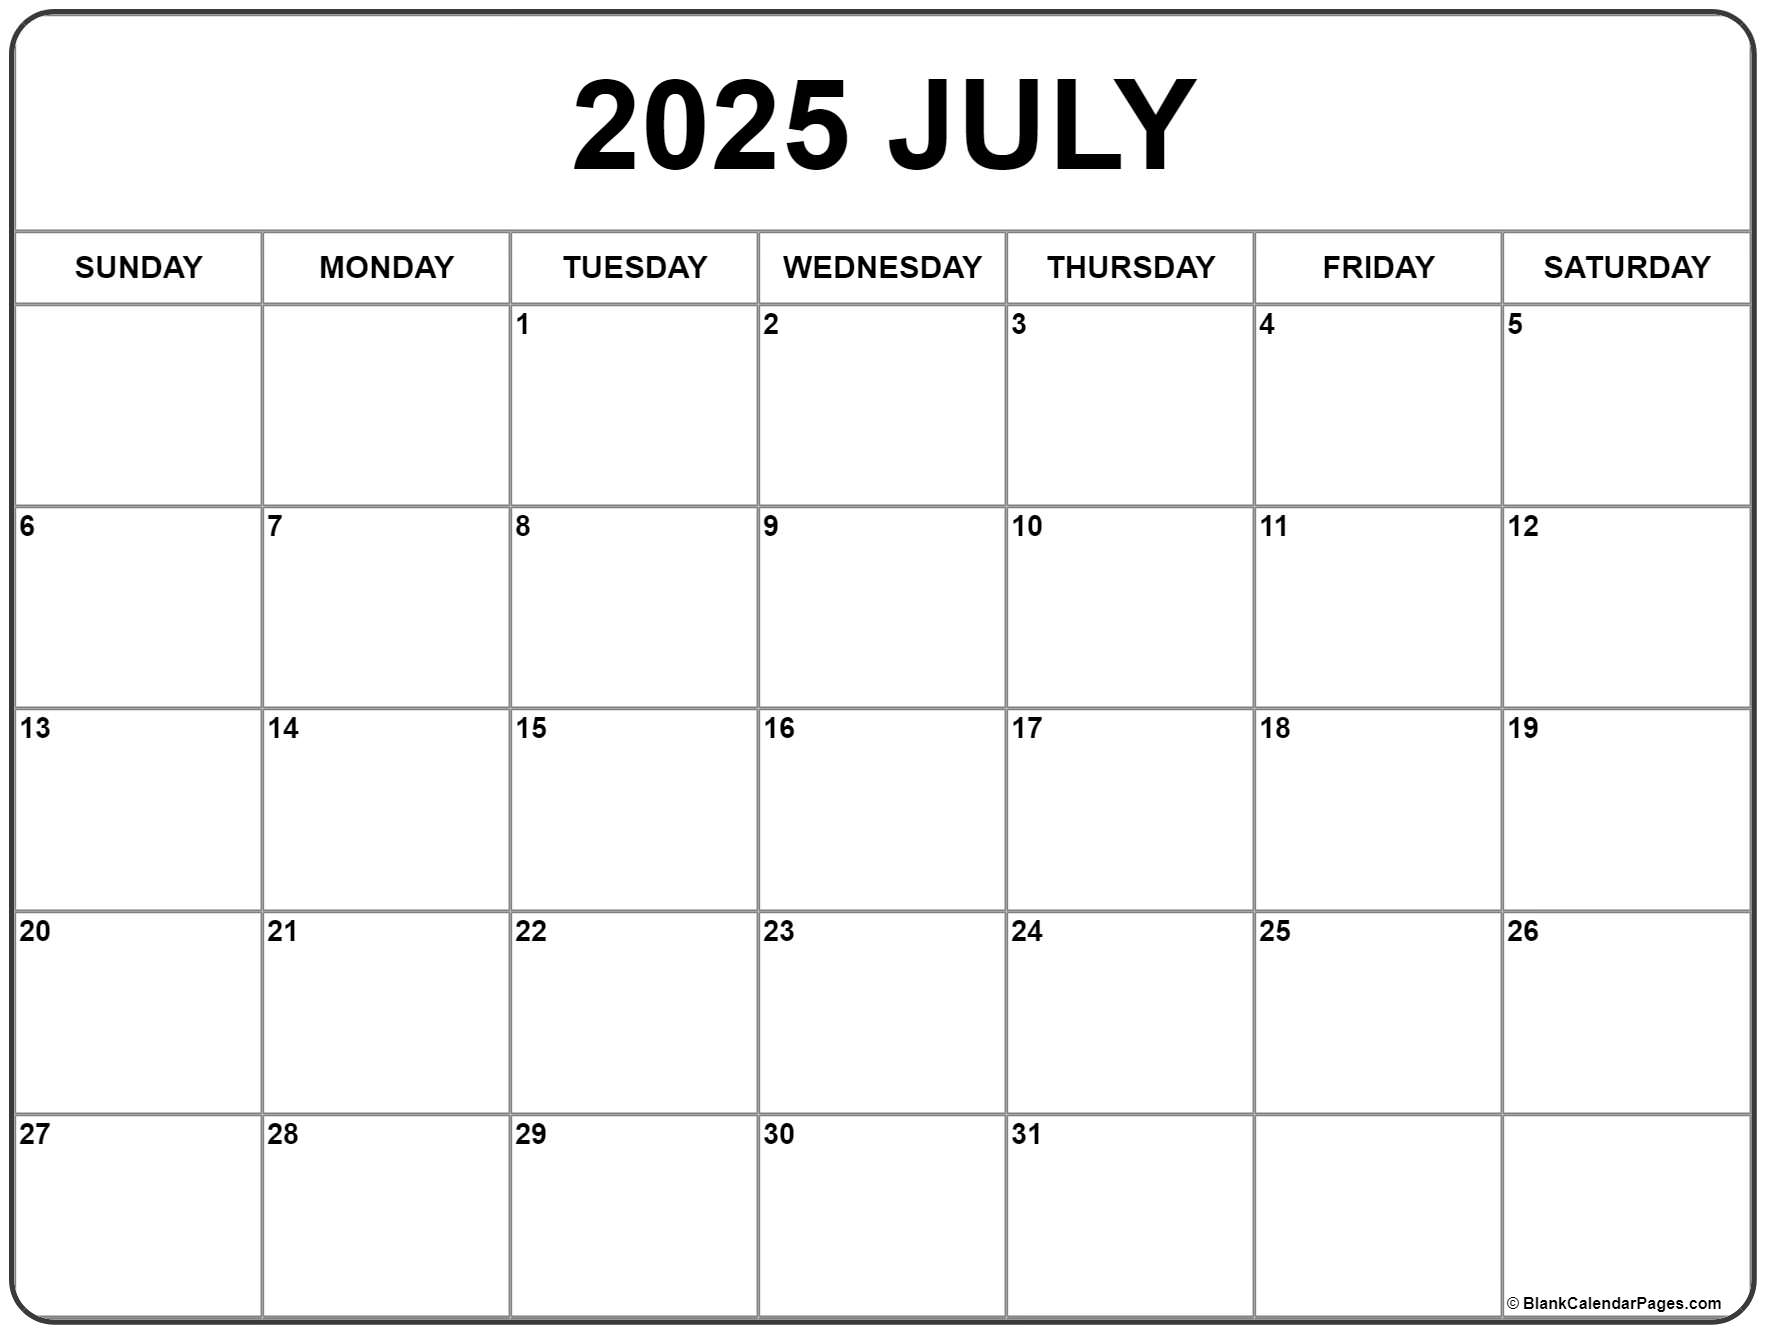 Agenda familial 2025